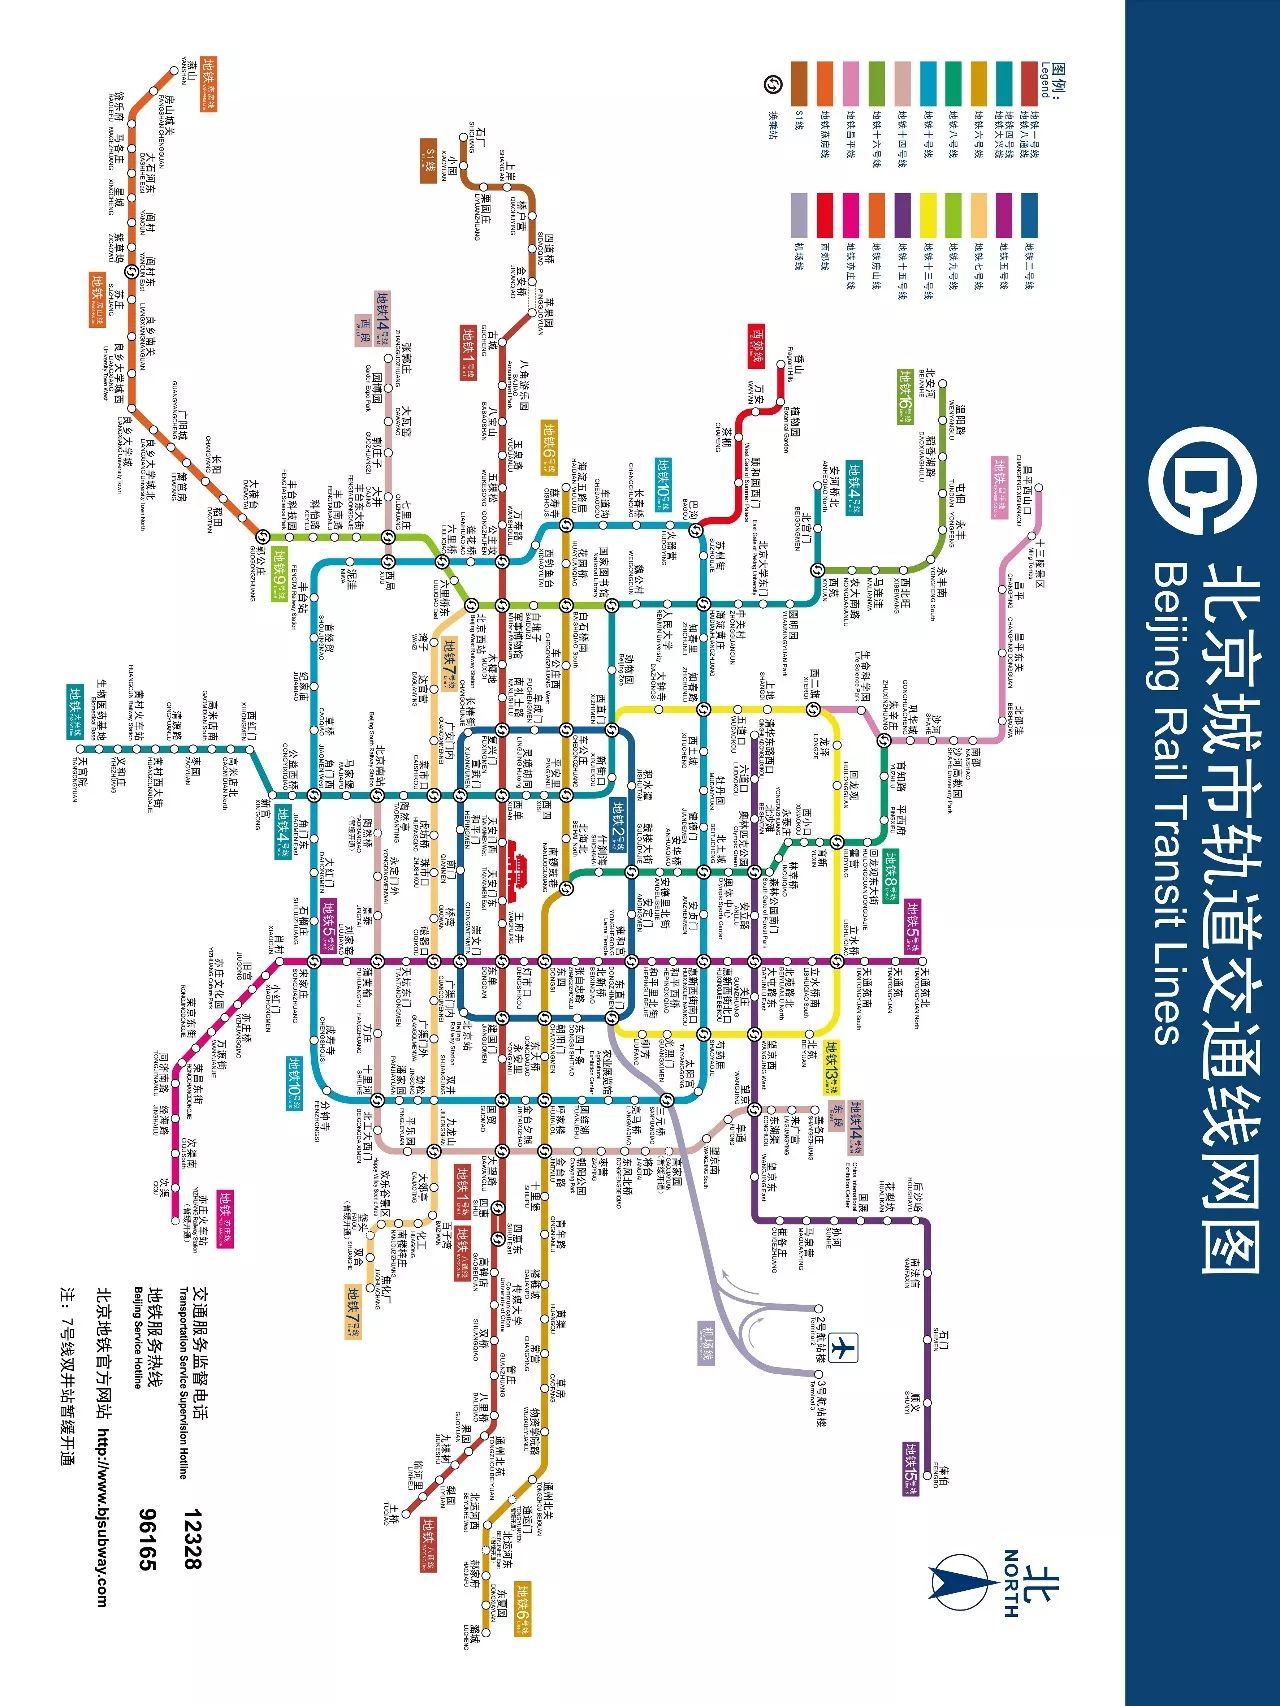 今天奉上最新版地铁线路图! 值得收藏!